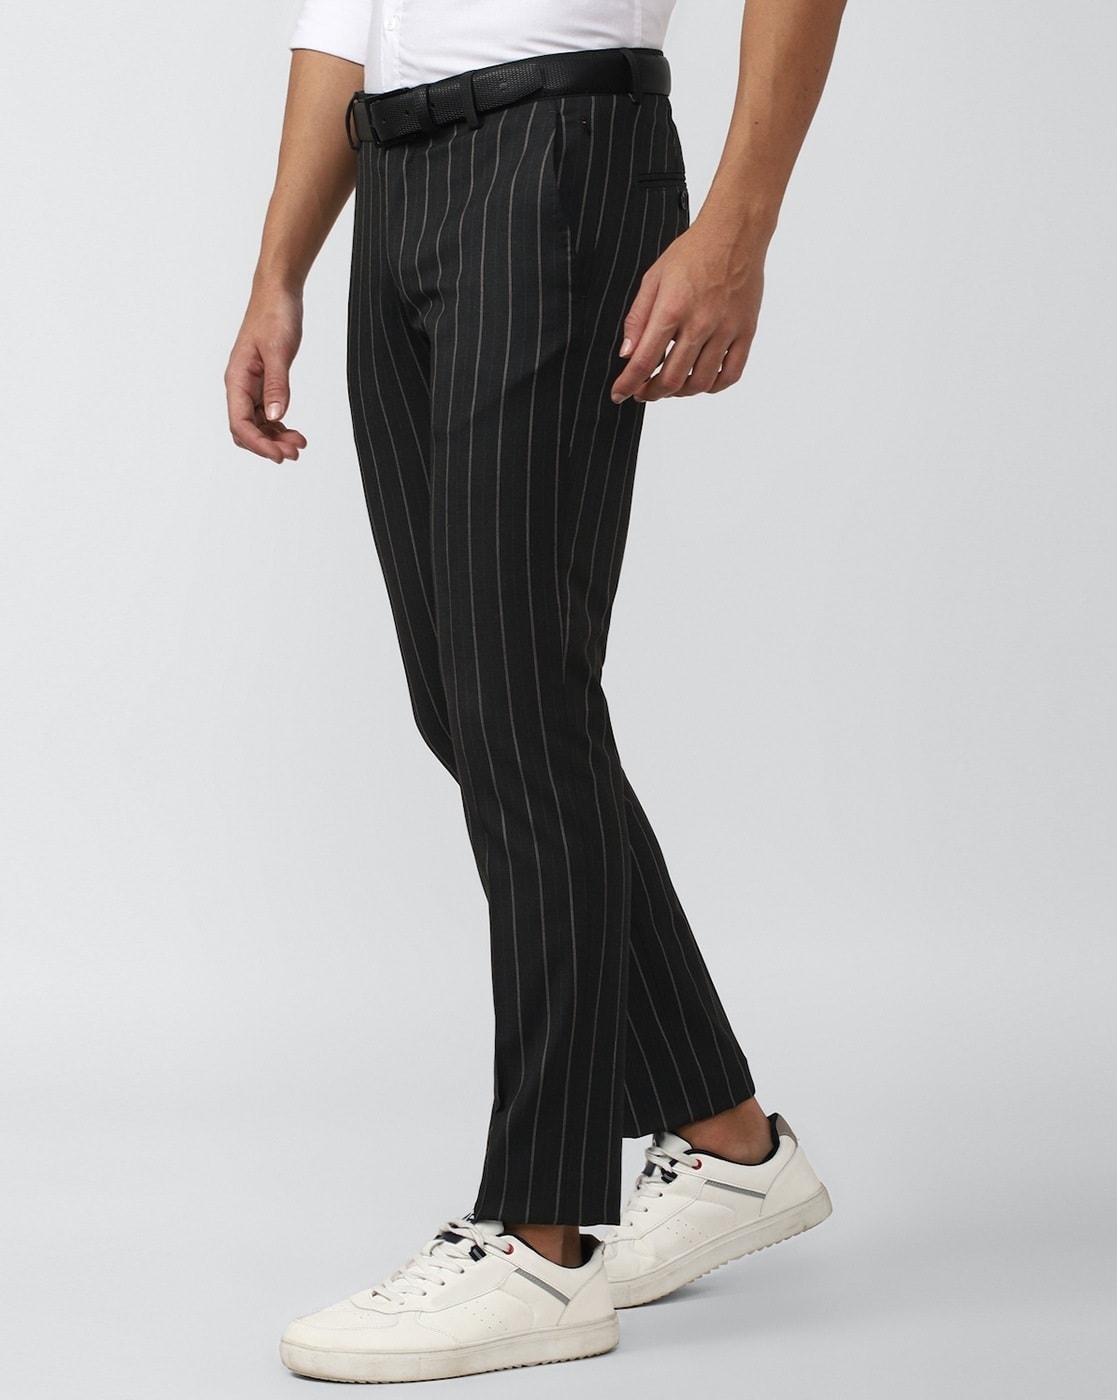 Preston Striped Trousers - Gray